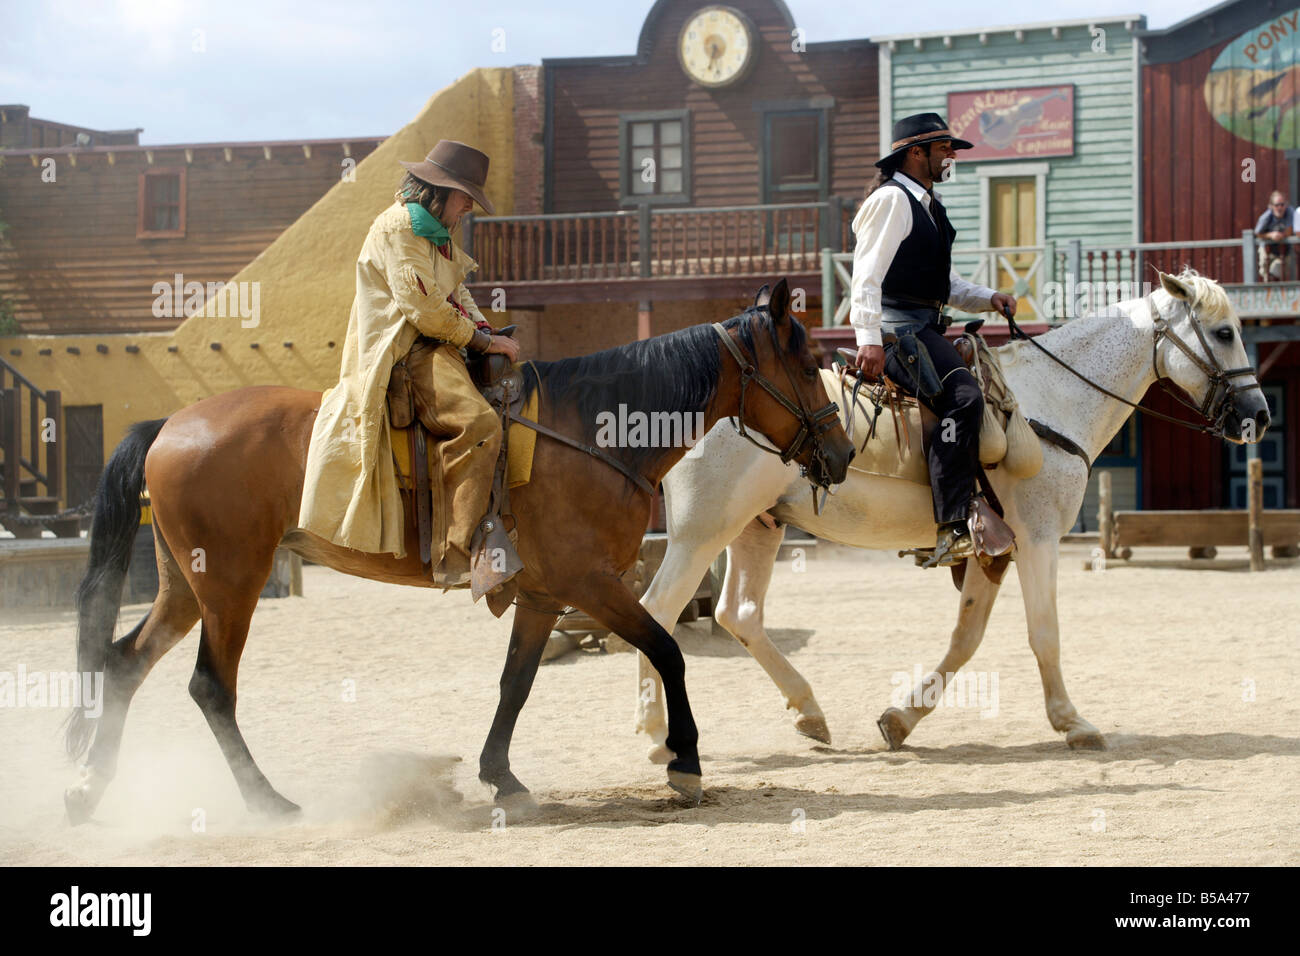 Cowboy shootout at  Spaghetti Western film set, Oasys, Mini Hollywood, Tabernas, Almeria, Spain Stock Photo